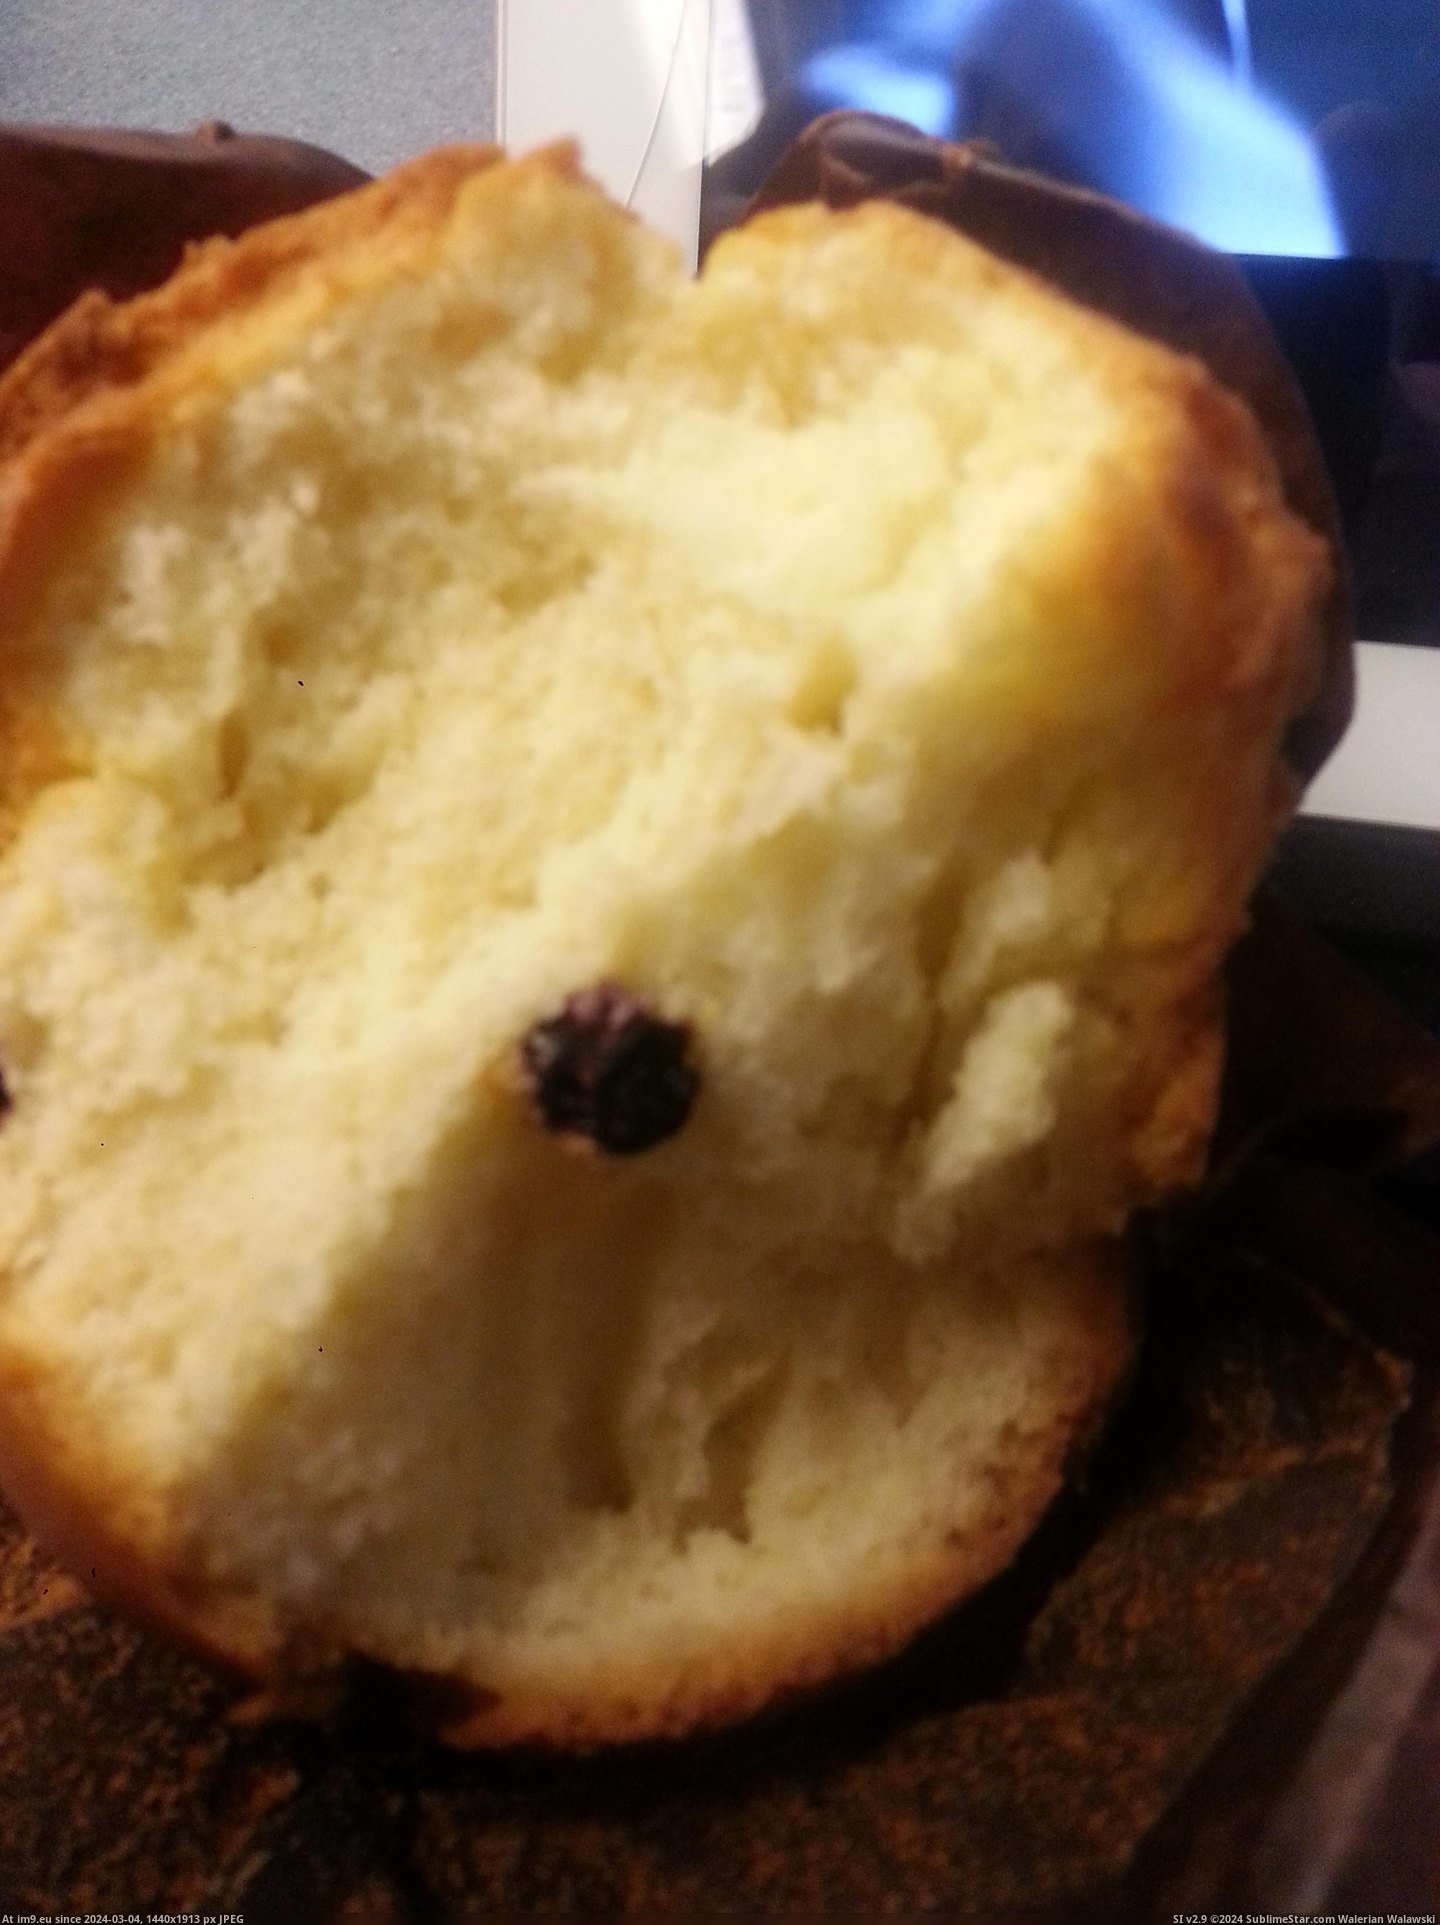 #Funny #Description #Expect #Blueberry #Muffin #Ordered #Accurate [Funny] Ordered a blueberry muffin. Got 1 blueberry. I didnt expect the description to be so accurate. Pic. (Bild von album My r/FUNNY favs))